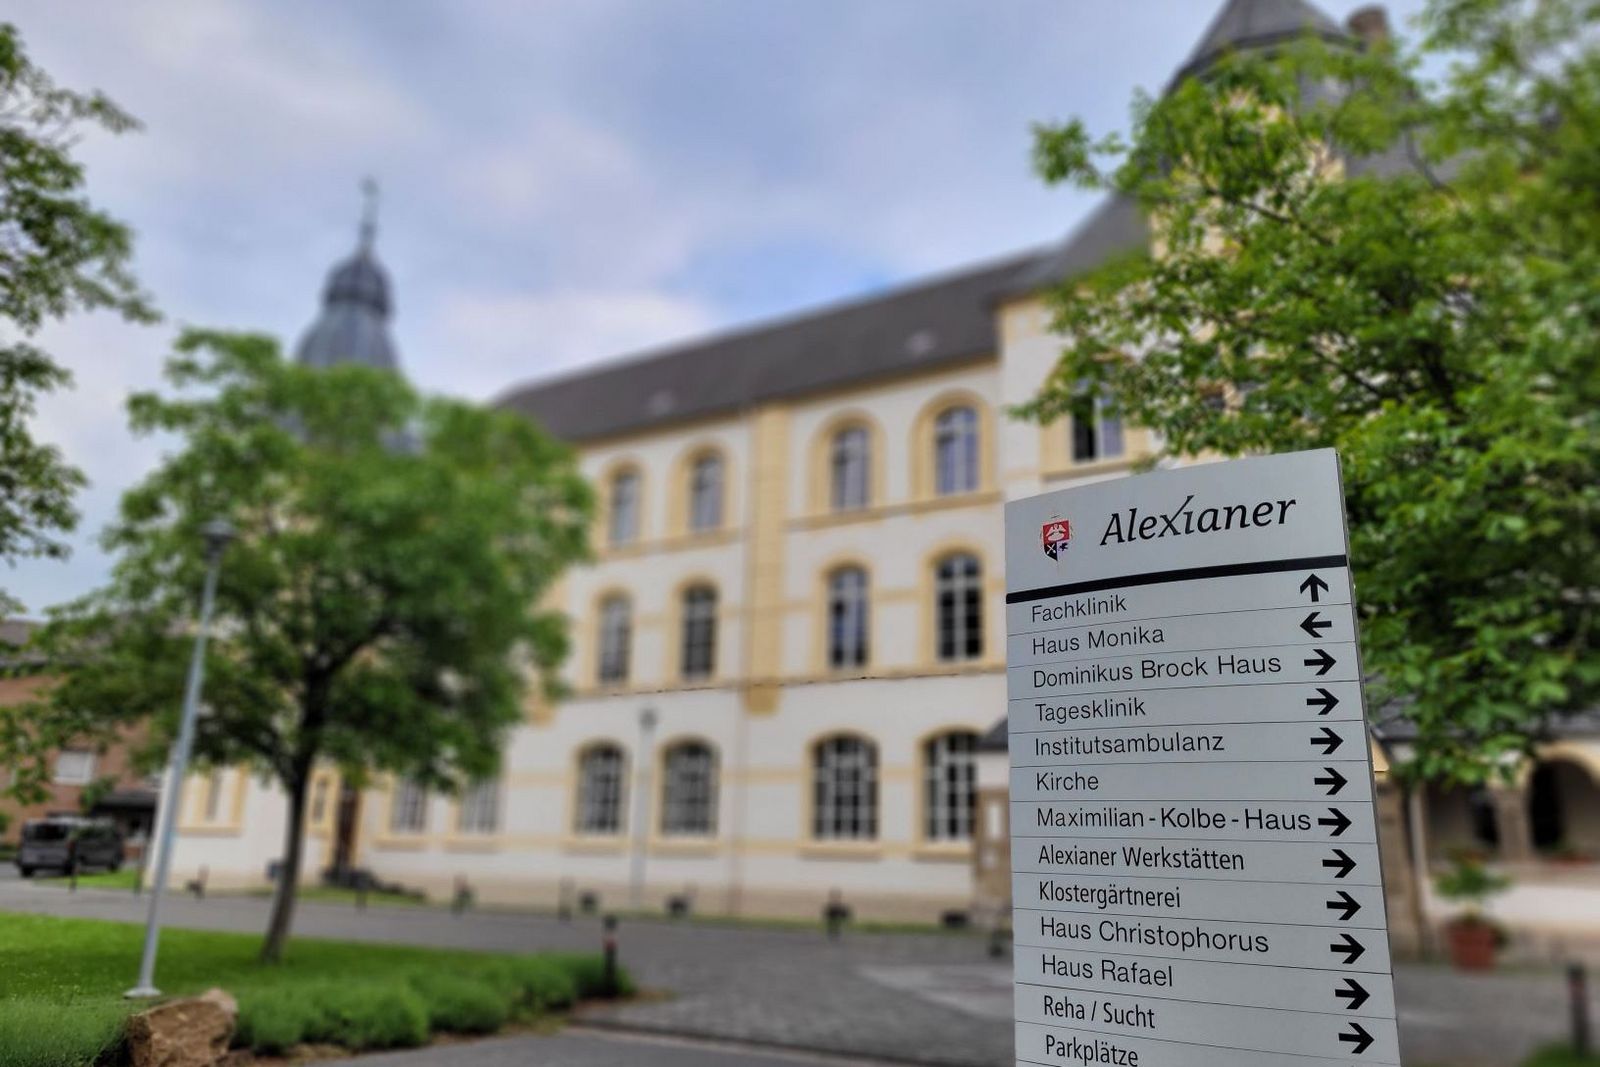 Das Alexianer Fachkrankenhaus für Psychiatrie und Psychotherapie in Köln-Porz